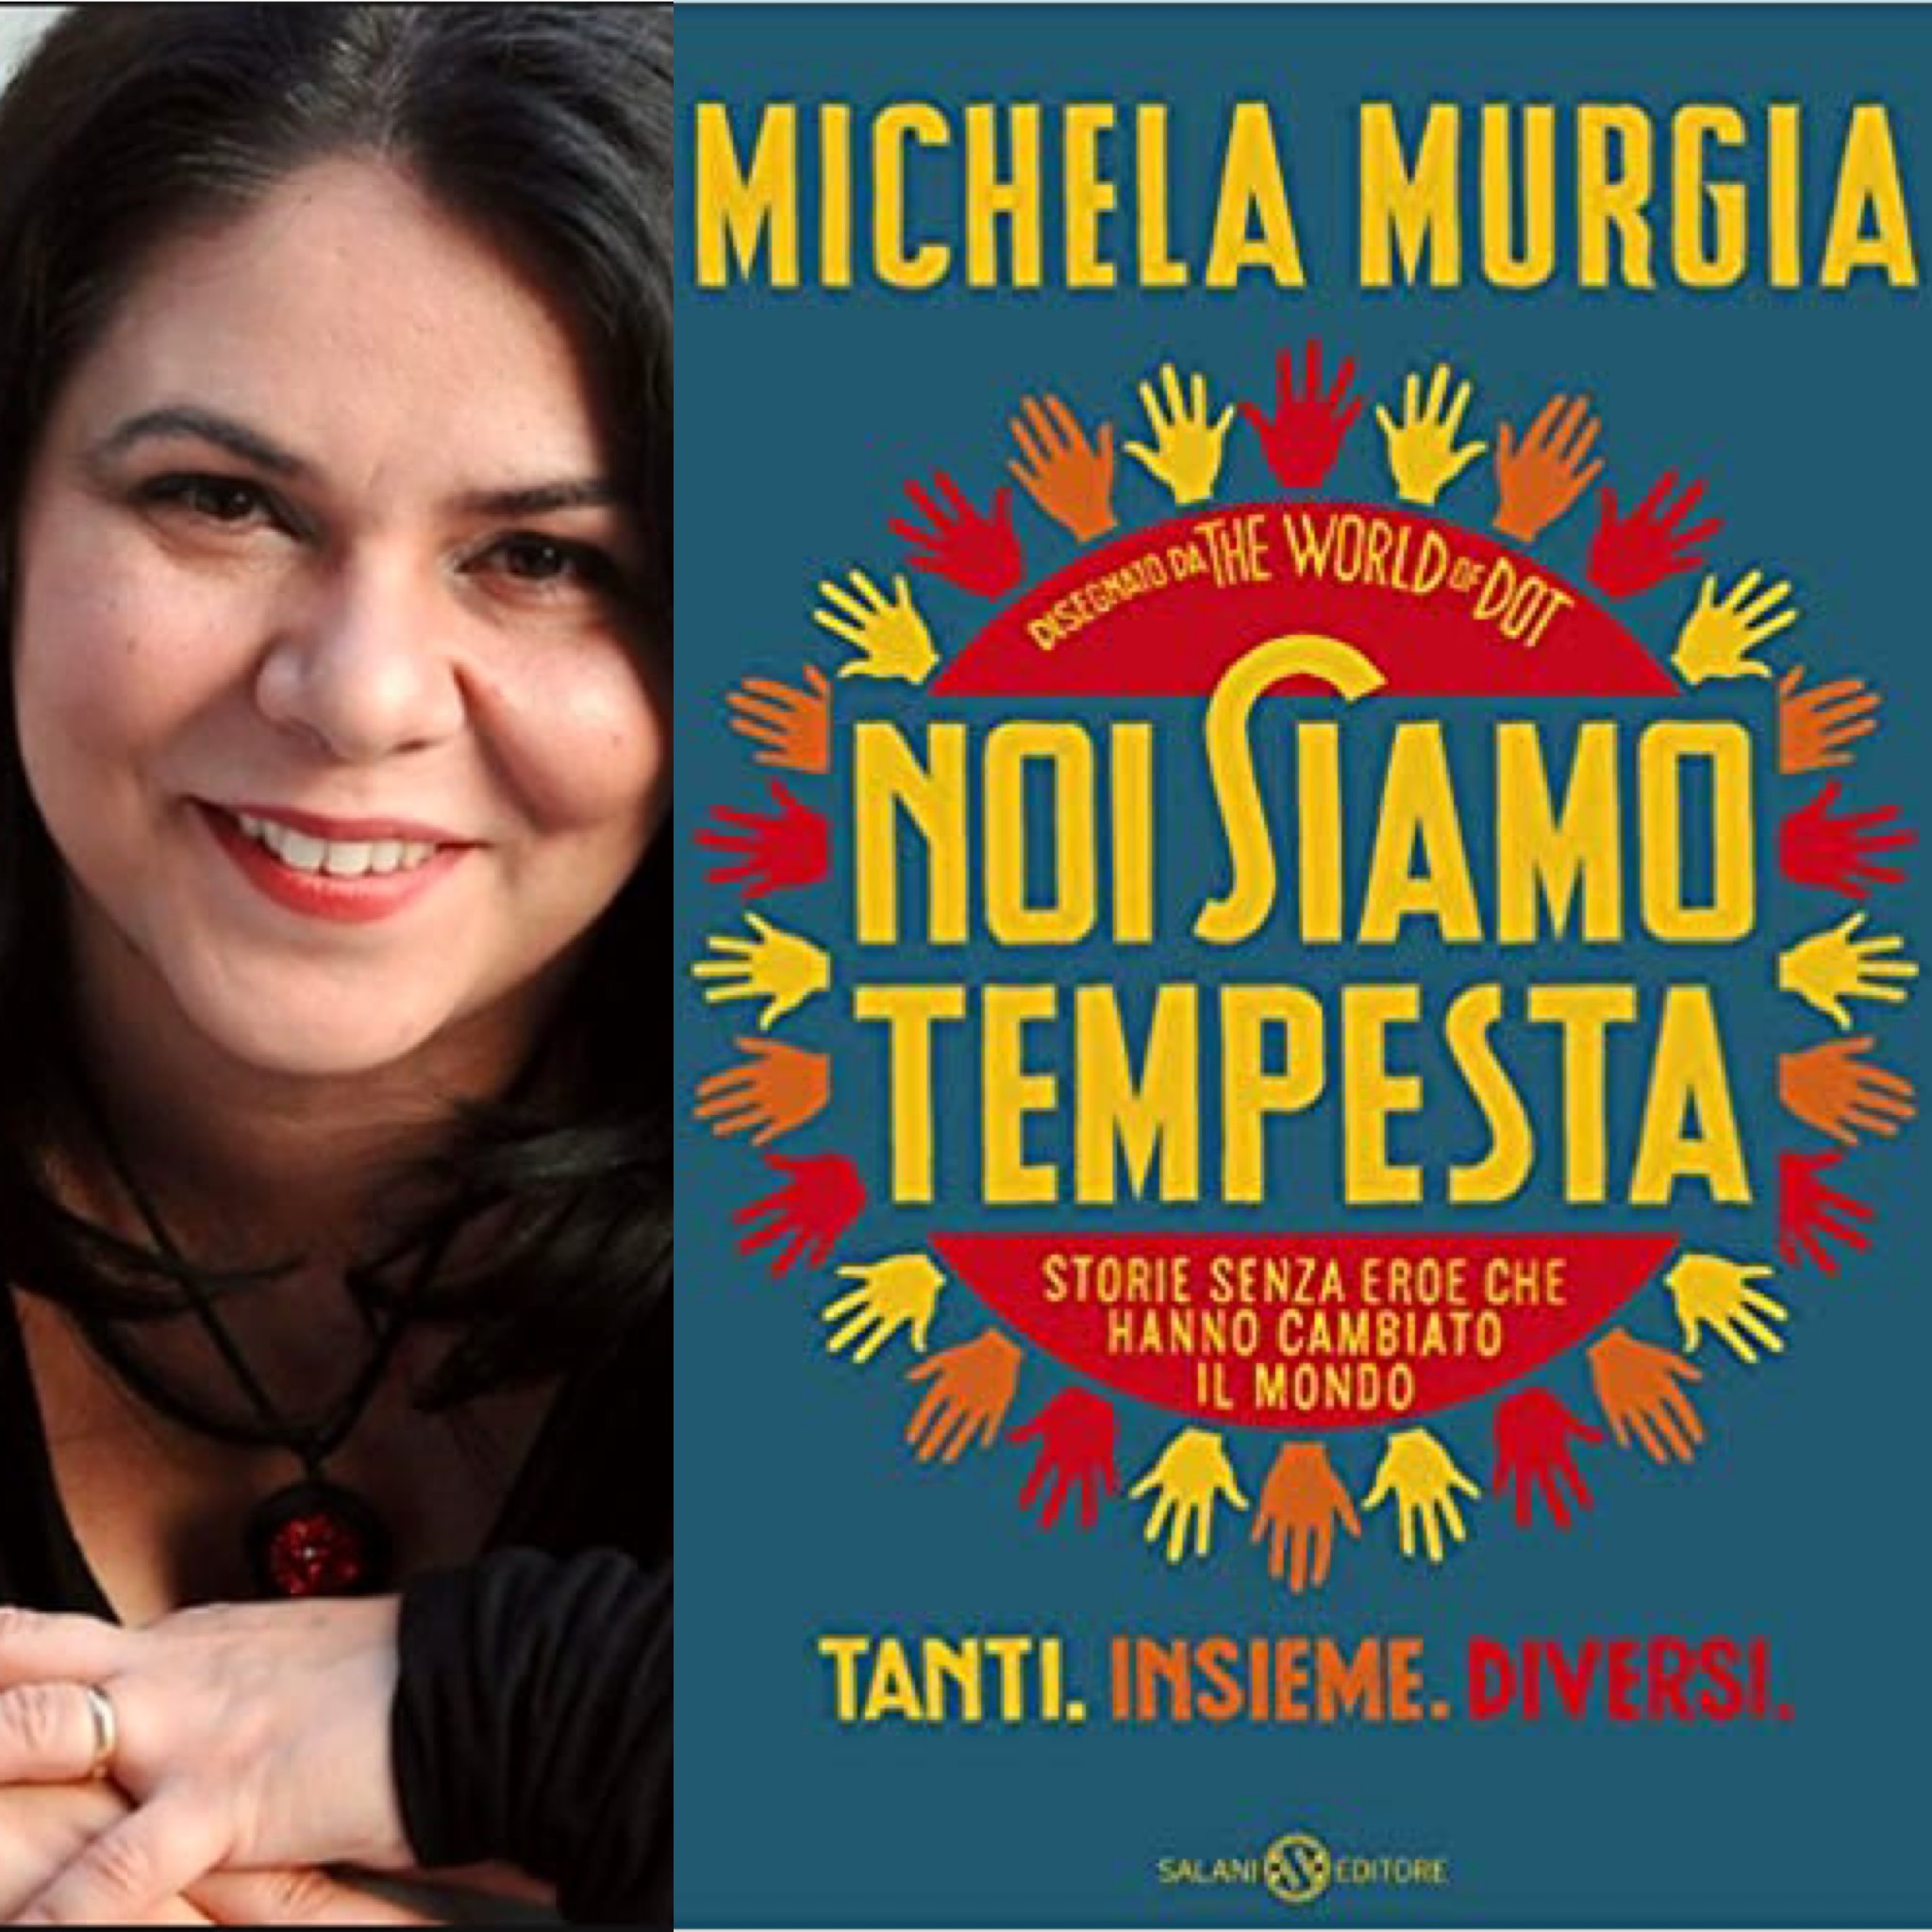 Michela Murgia, autrice di “Noi siamo tempesta”, a colloquio sul Super  Potere delle Comunità a Cortona :: Eventi e Cultura